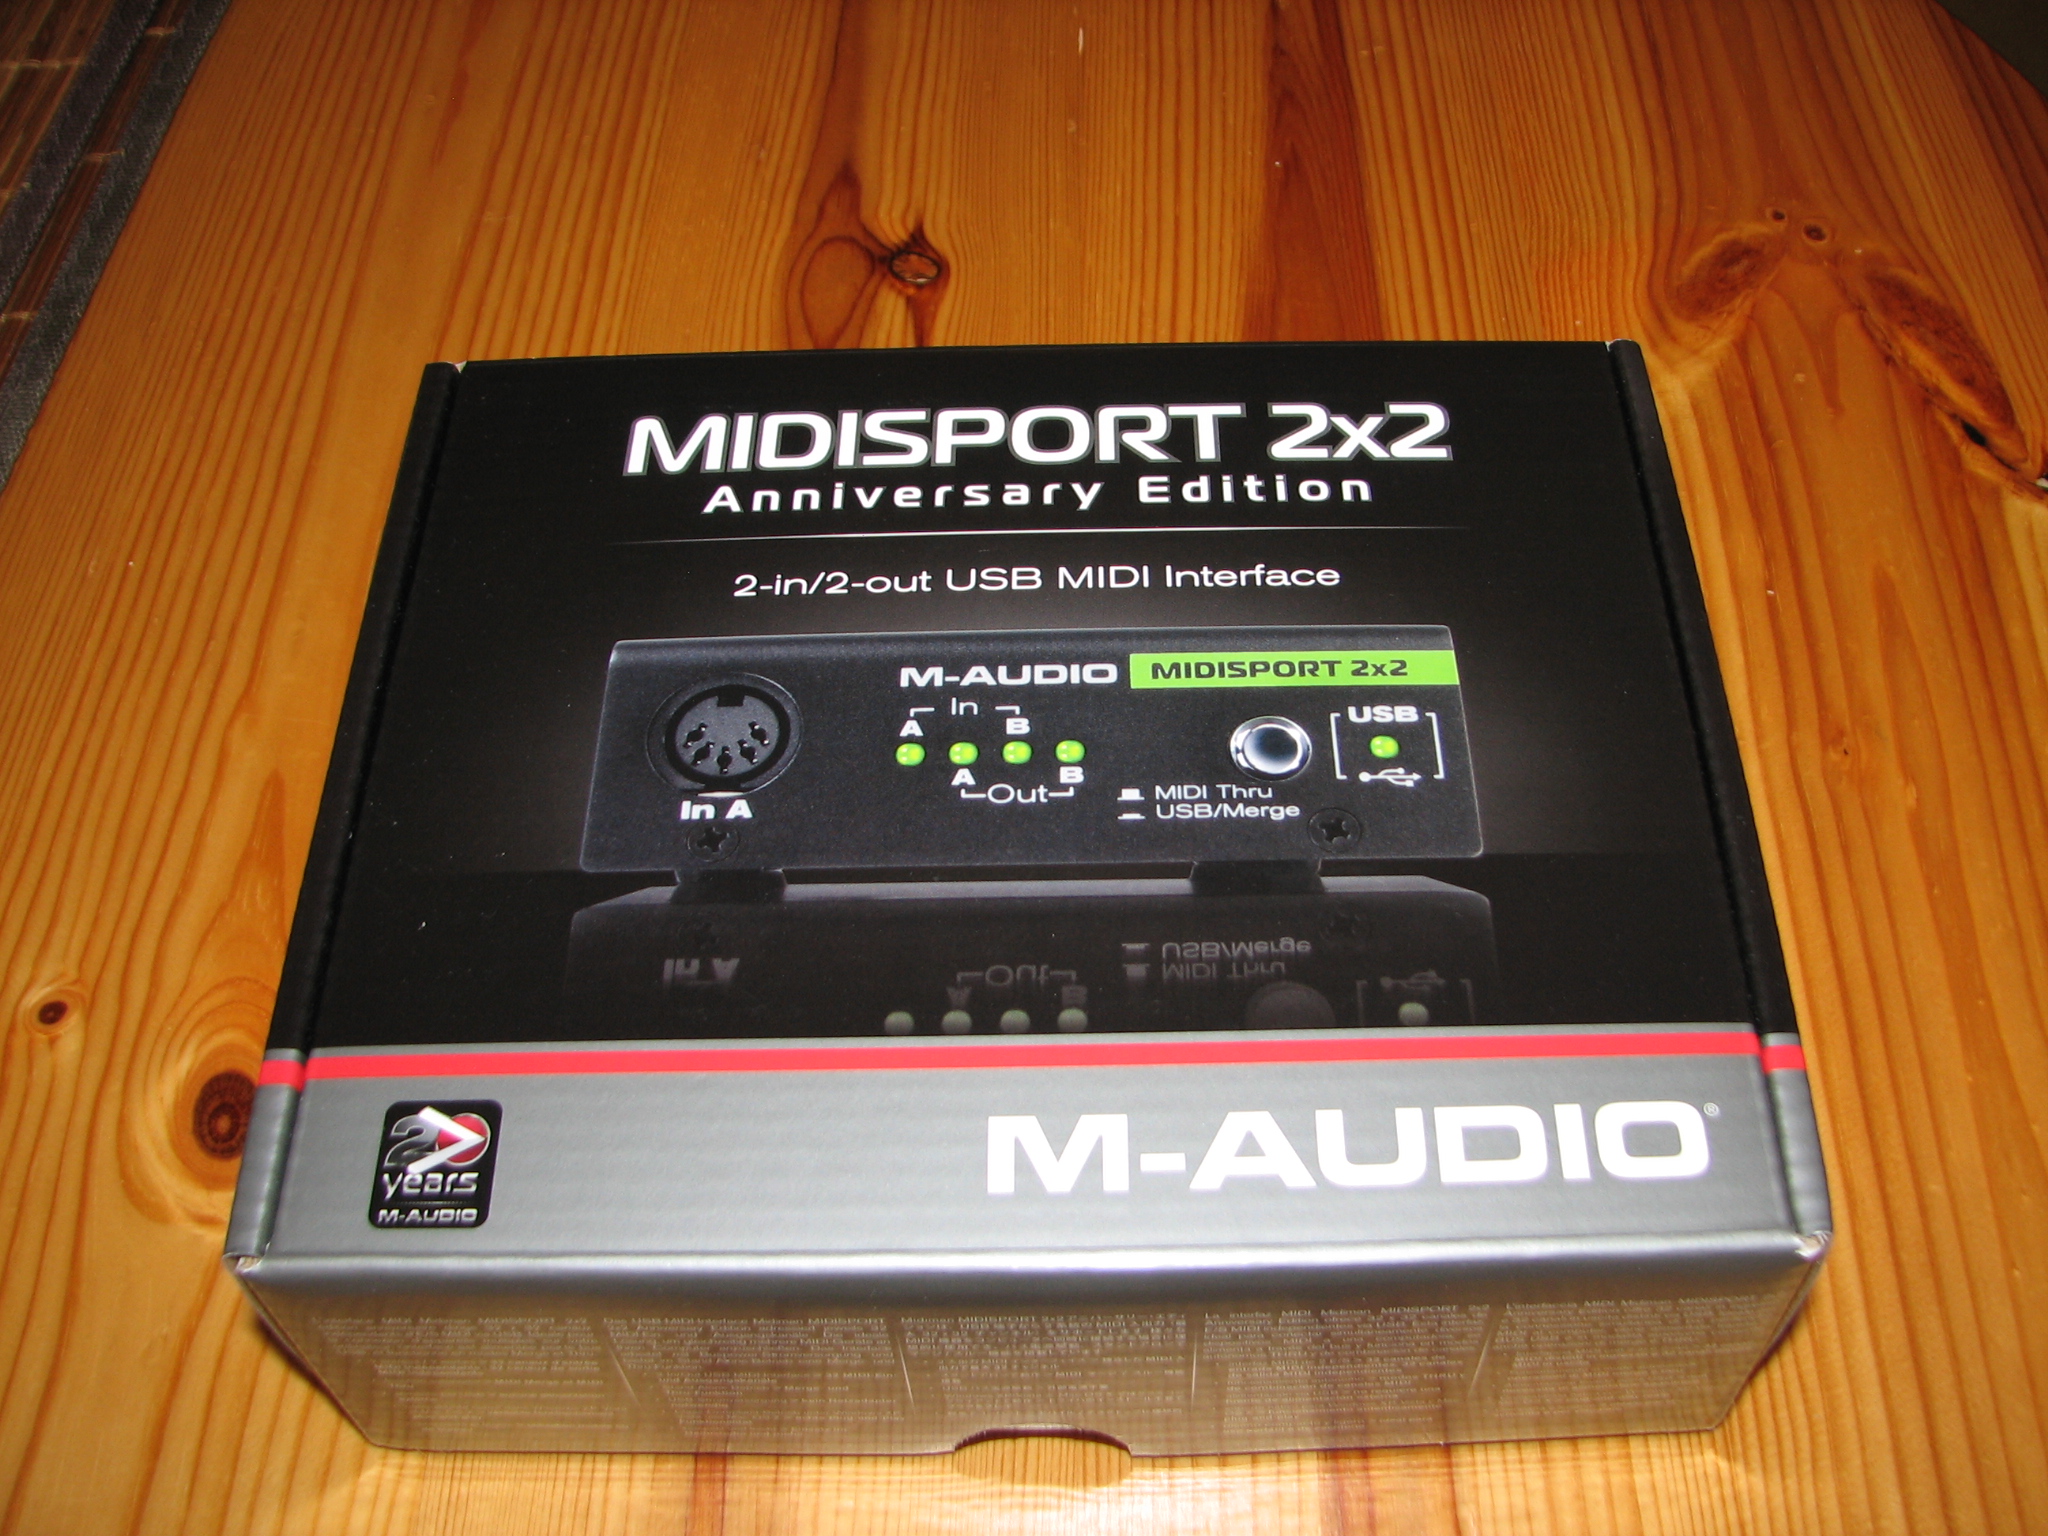 m audio drivers for original midisport 2x2